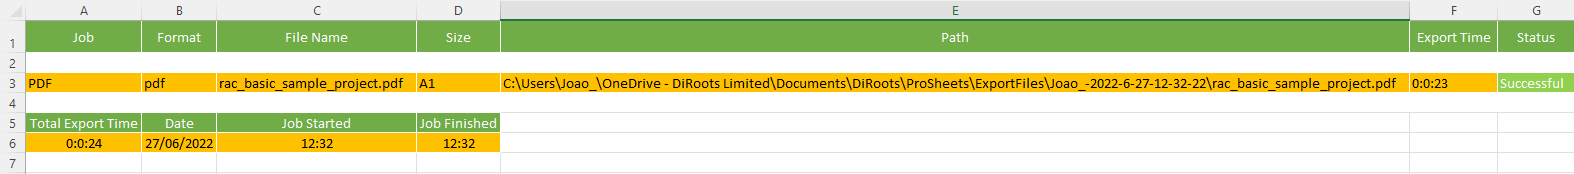 ProSheets Revit Export Report in Excel